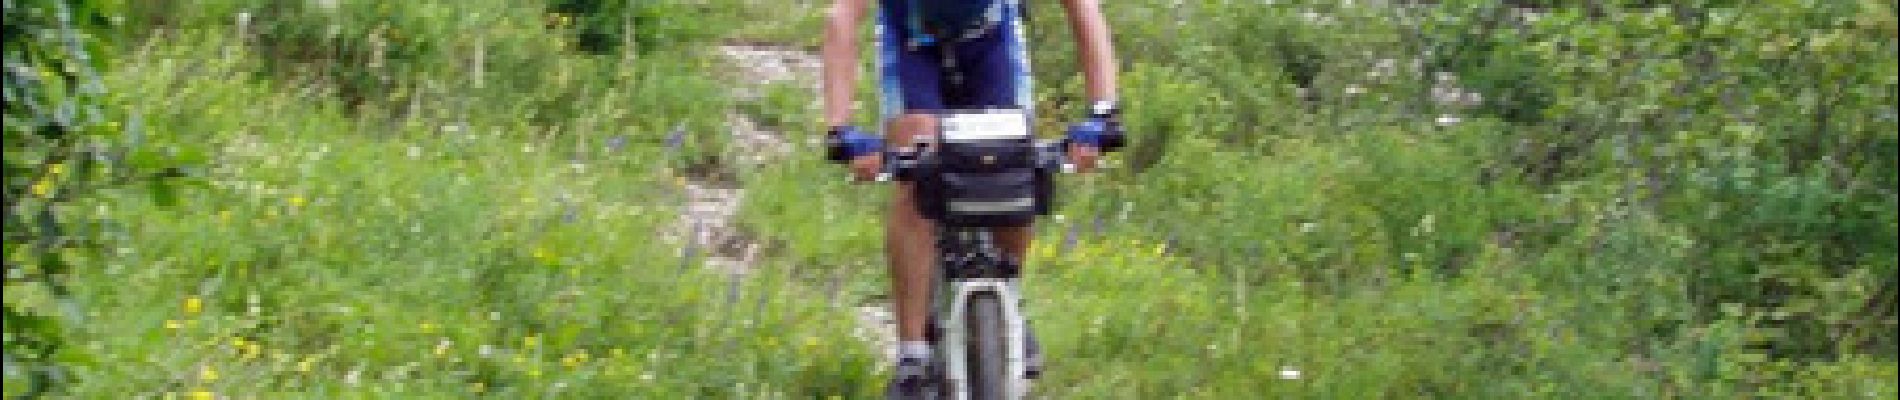 Excursión Bici de montaña Le Bourg-d'Oisans - Tour VTT intégral du Parc National des Ecrins en 9 jours - Photo